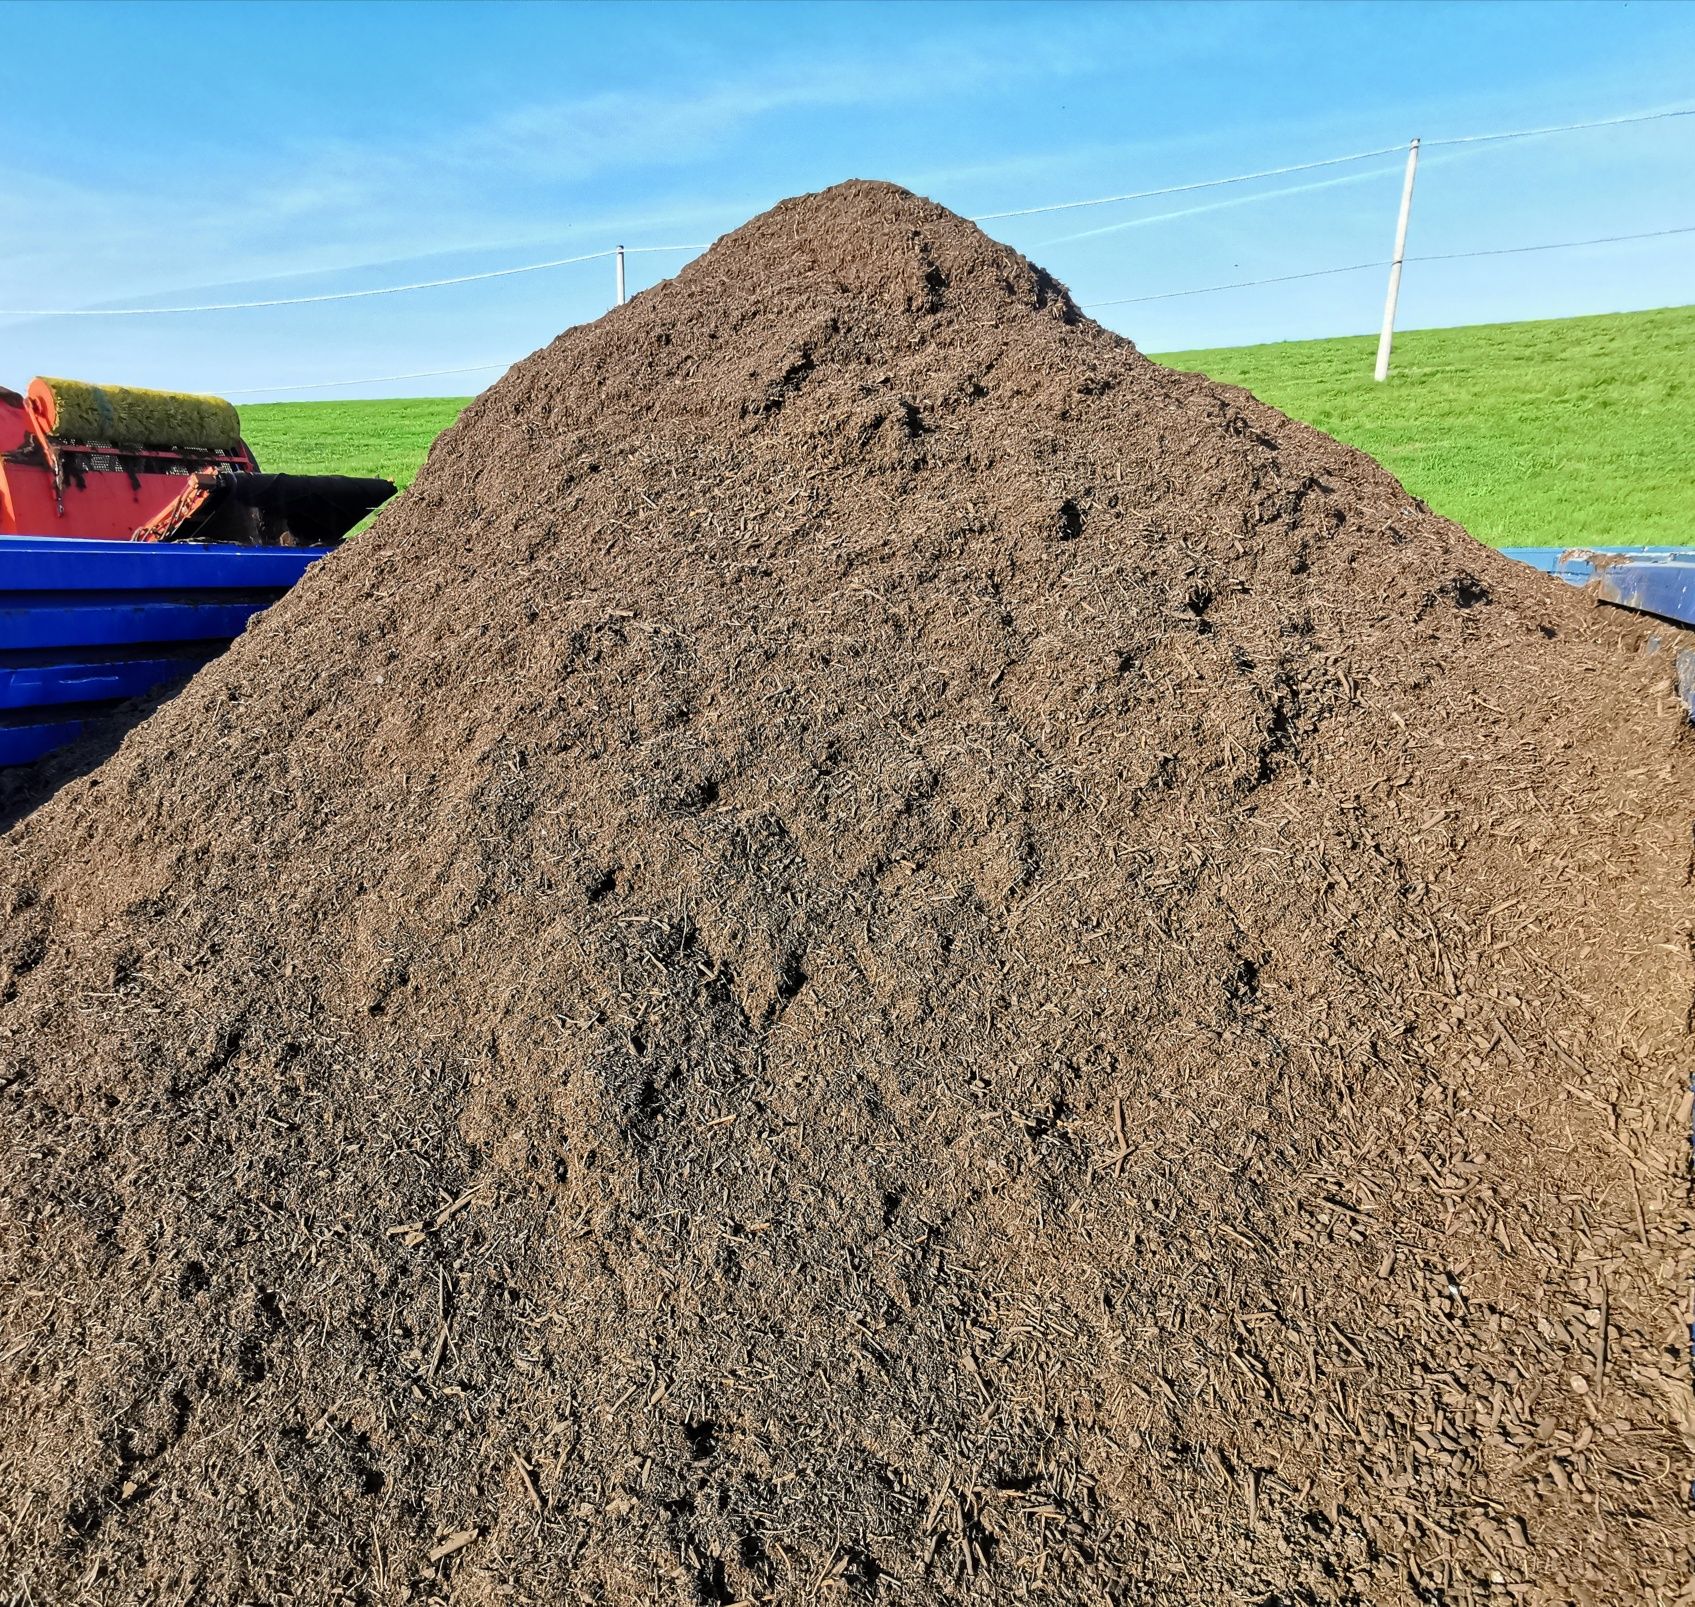 Kompost pod rabaty/eko kompost/nawóz organiczny/eko nawóz - certyfikat